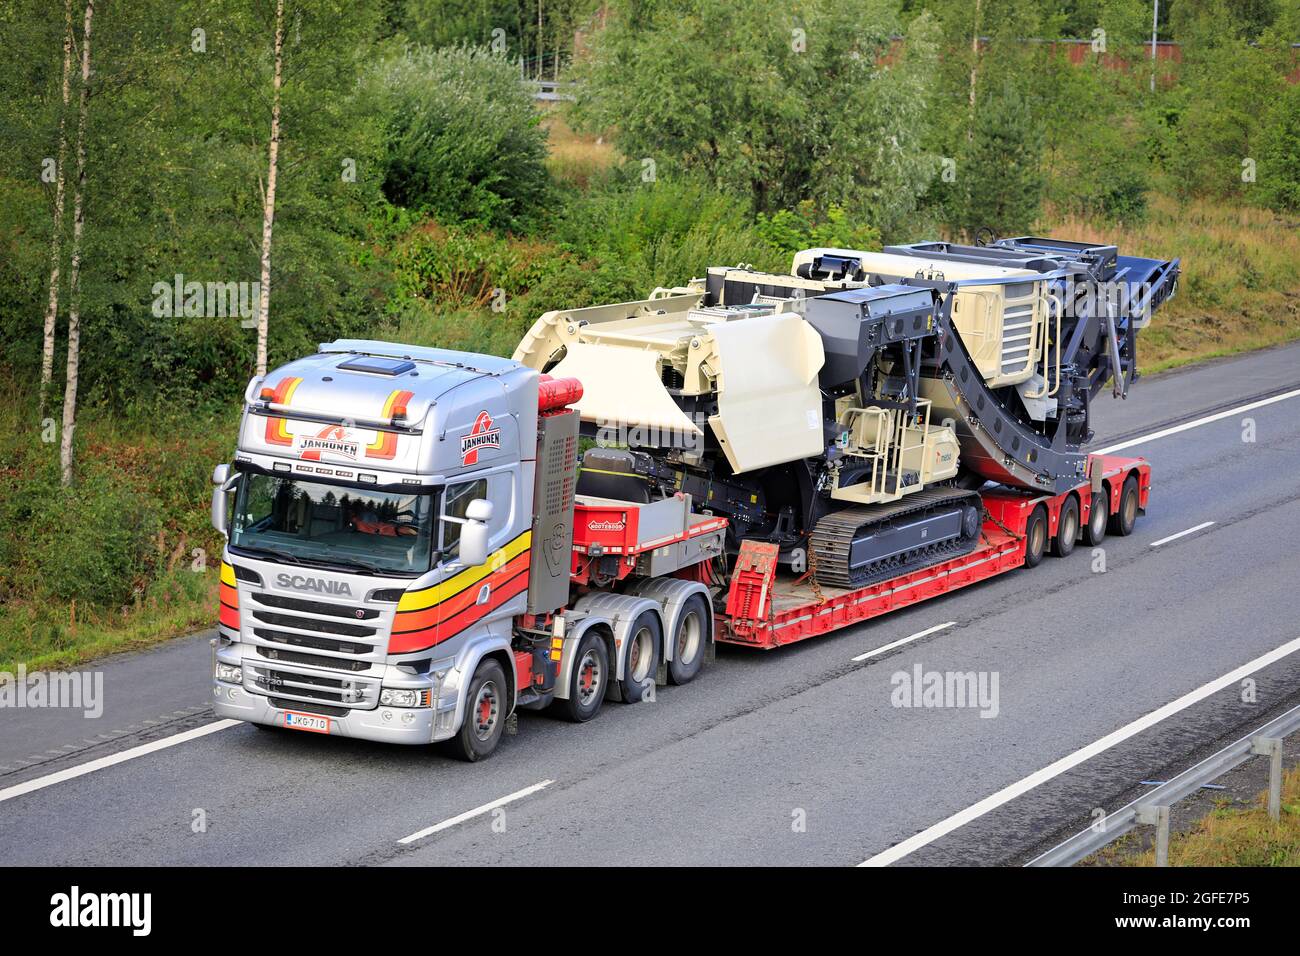 Scania R730 camion de Janhunen transporte Metso Lokotrack usine mobile de broyage et de criblage sur l'autoroute à voies multiples 3, Akaa, Finlande. 12 août 2021 Banque D'Images